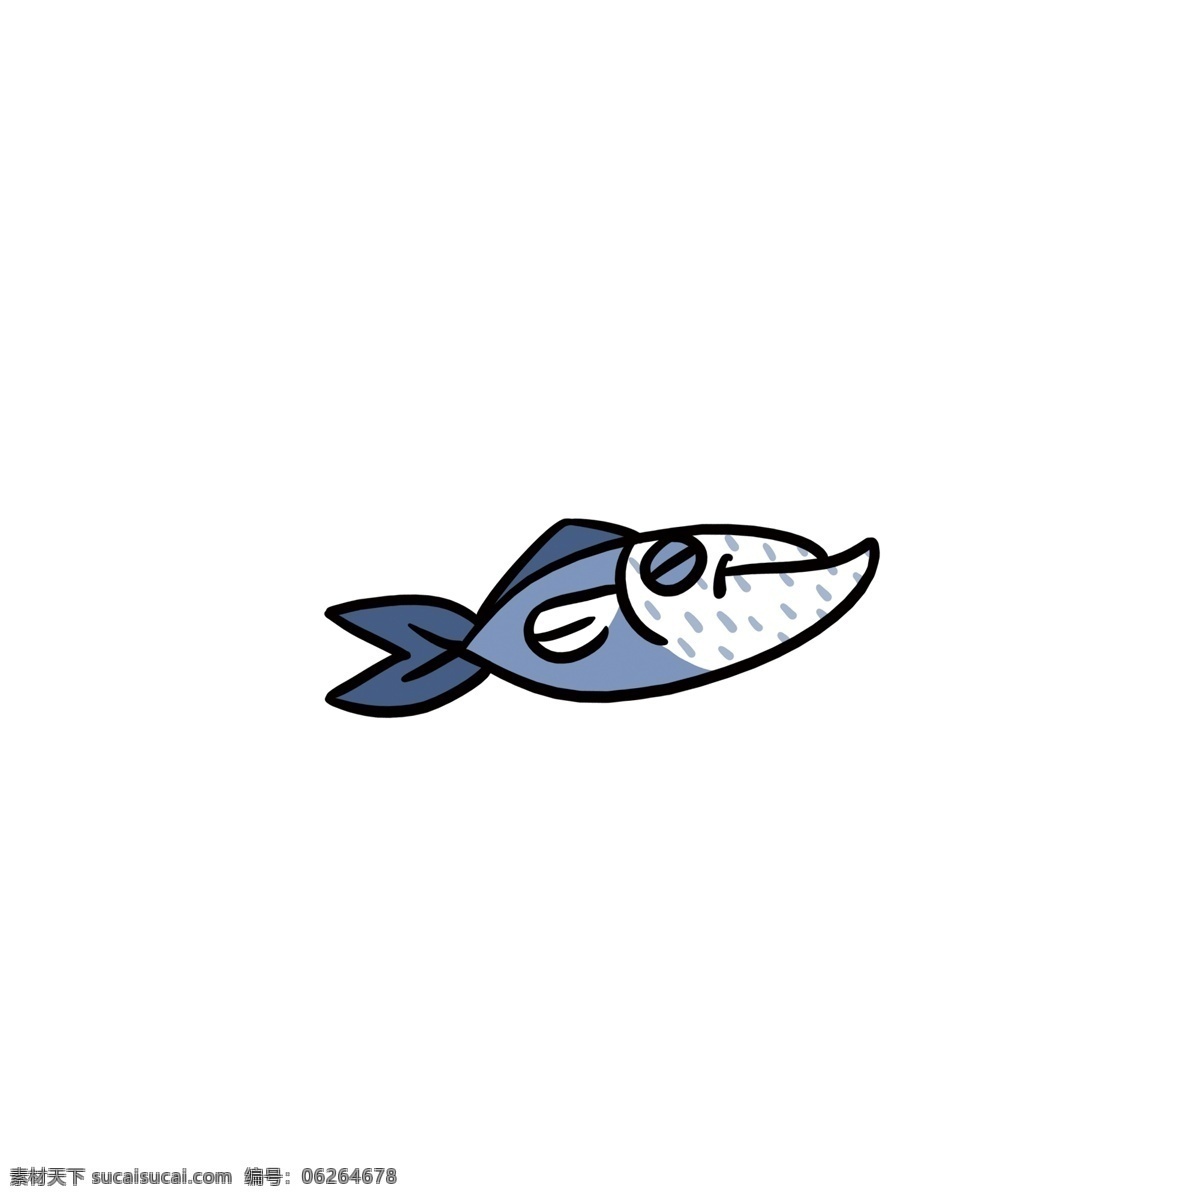 可爱 卡通 夏天 鱼 手绘 食物 图标 元素 蓝色 q版 设计元素 原创